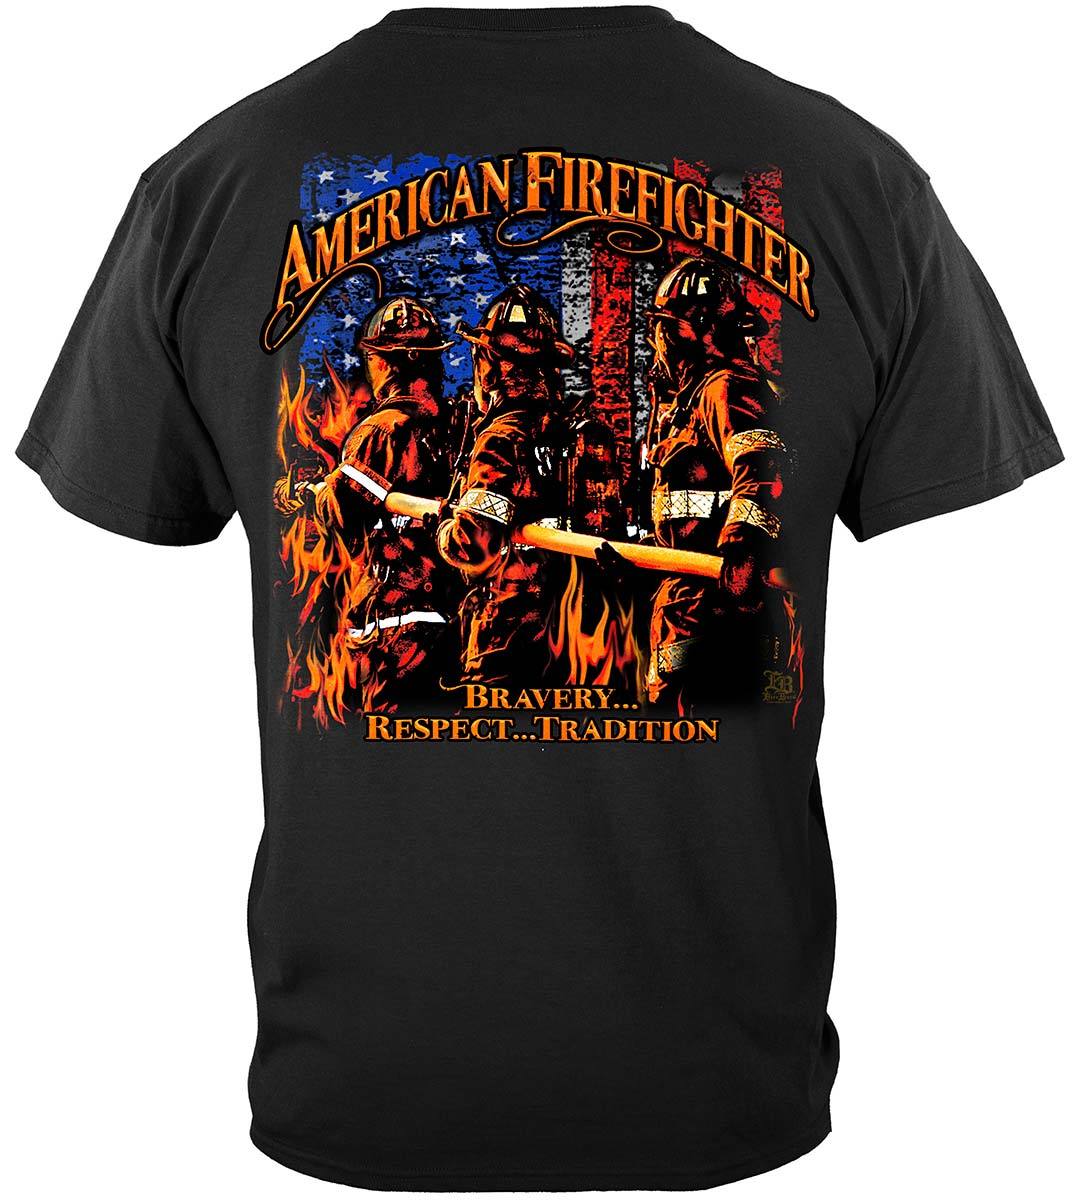 Elite Breed American Firefighter Premium Long Sleeves